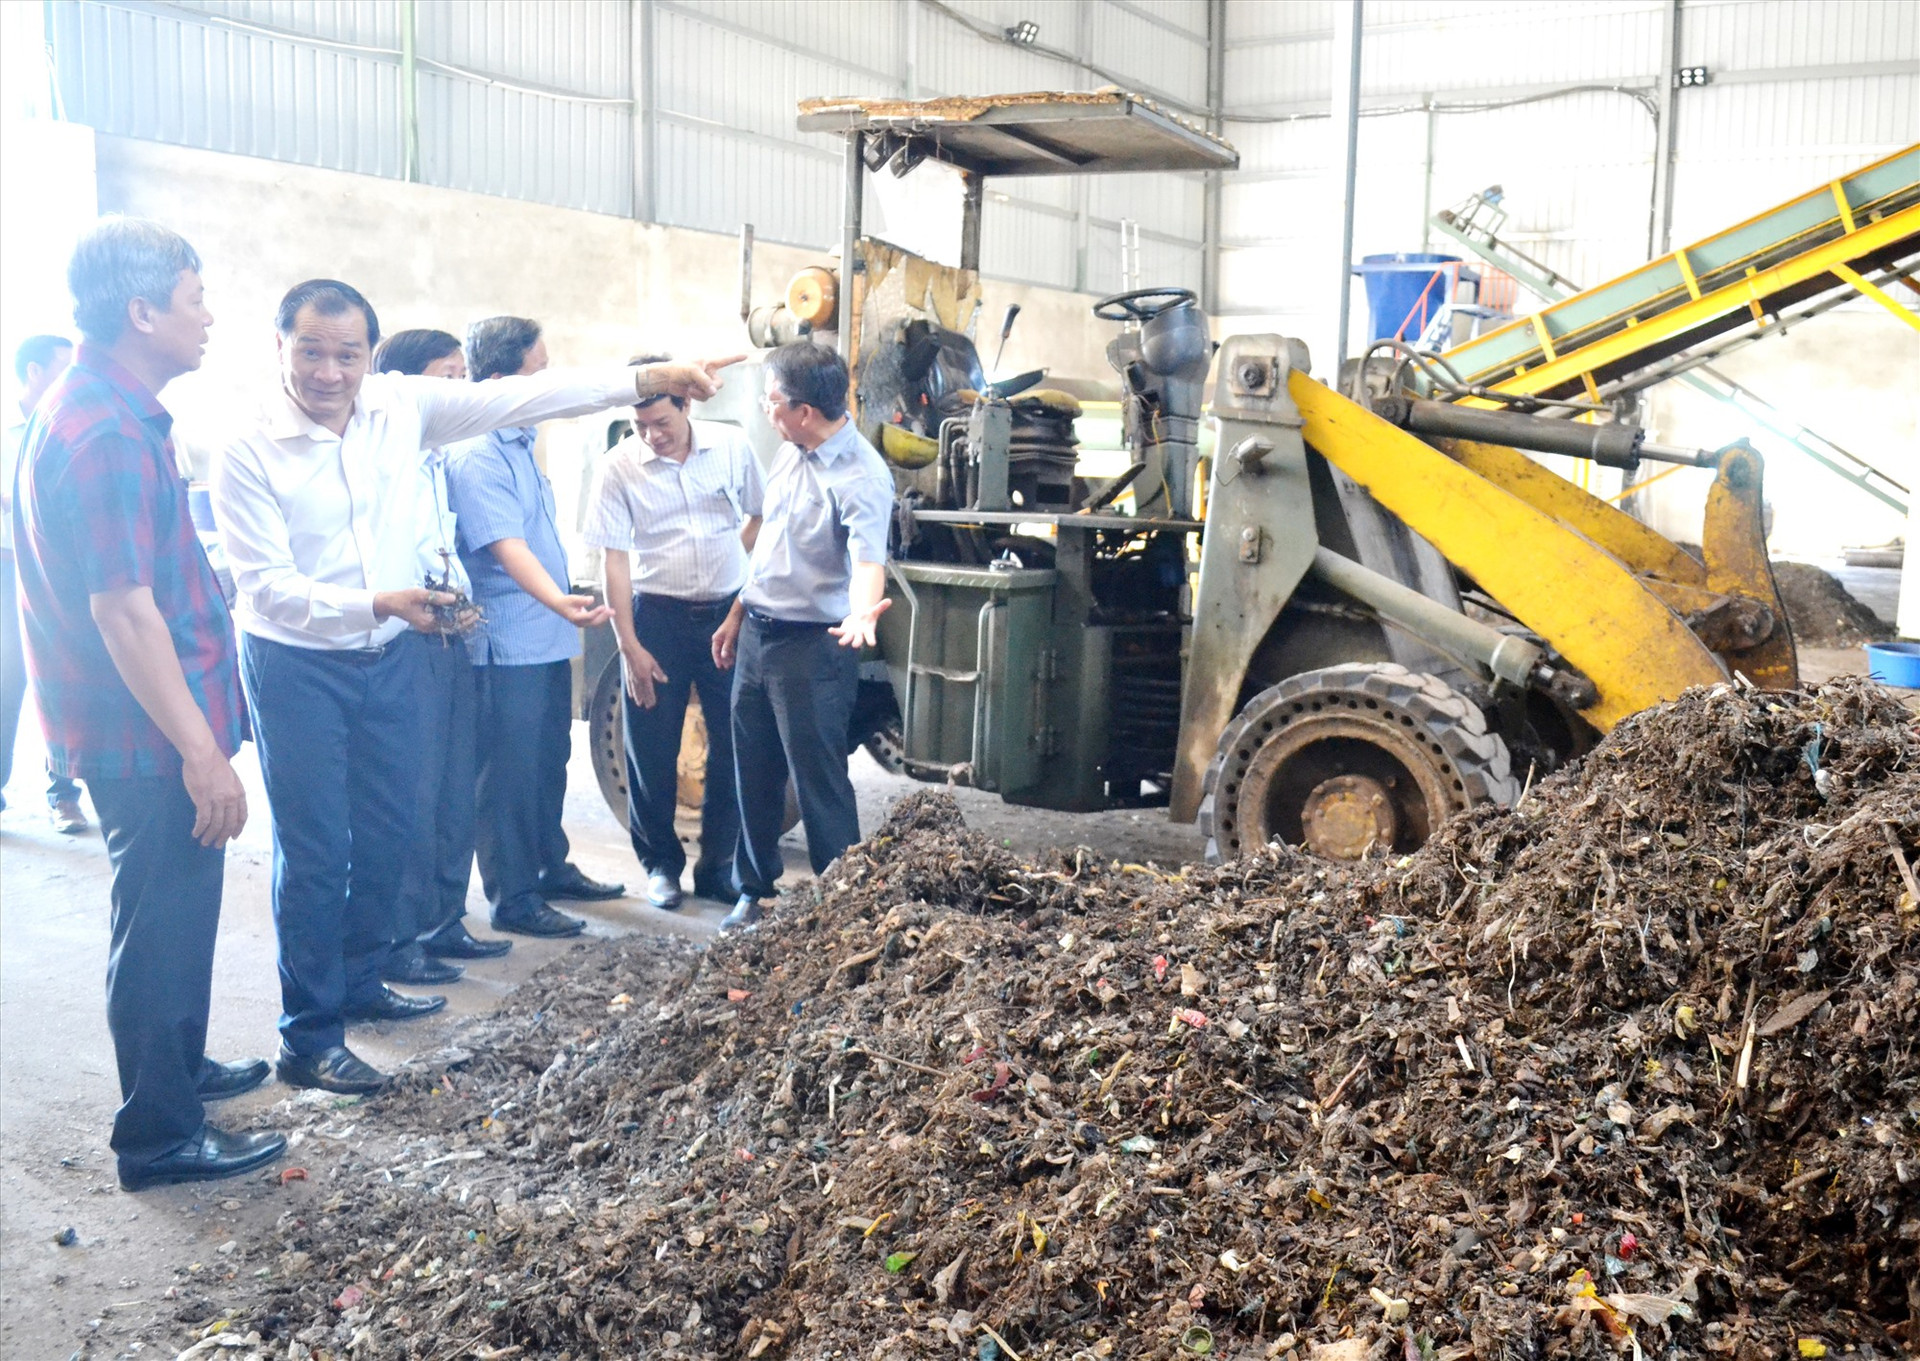 Phó Chủ tịch UBND tỉnh Hồ Quảng Bửu khảo sát quy trình xử lý chất thải rắn và tái chế phân bón của Công ty CP Môi trường Huy Hoàng ECO - chủ đầu tư Nhà máy xử lý chất thải rắn Bắc Quảng Nam. Ảnh: QUANG VIỆT